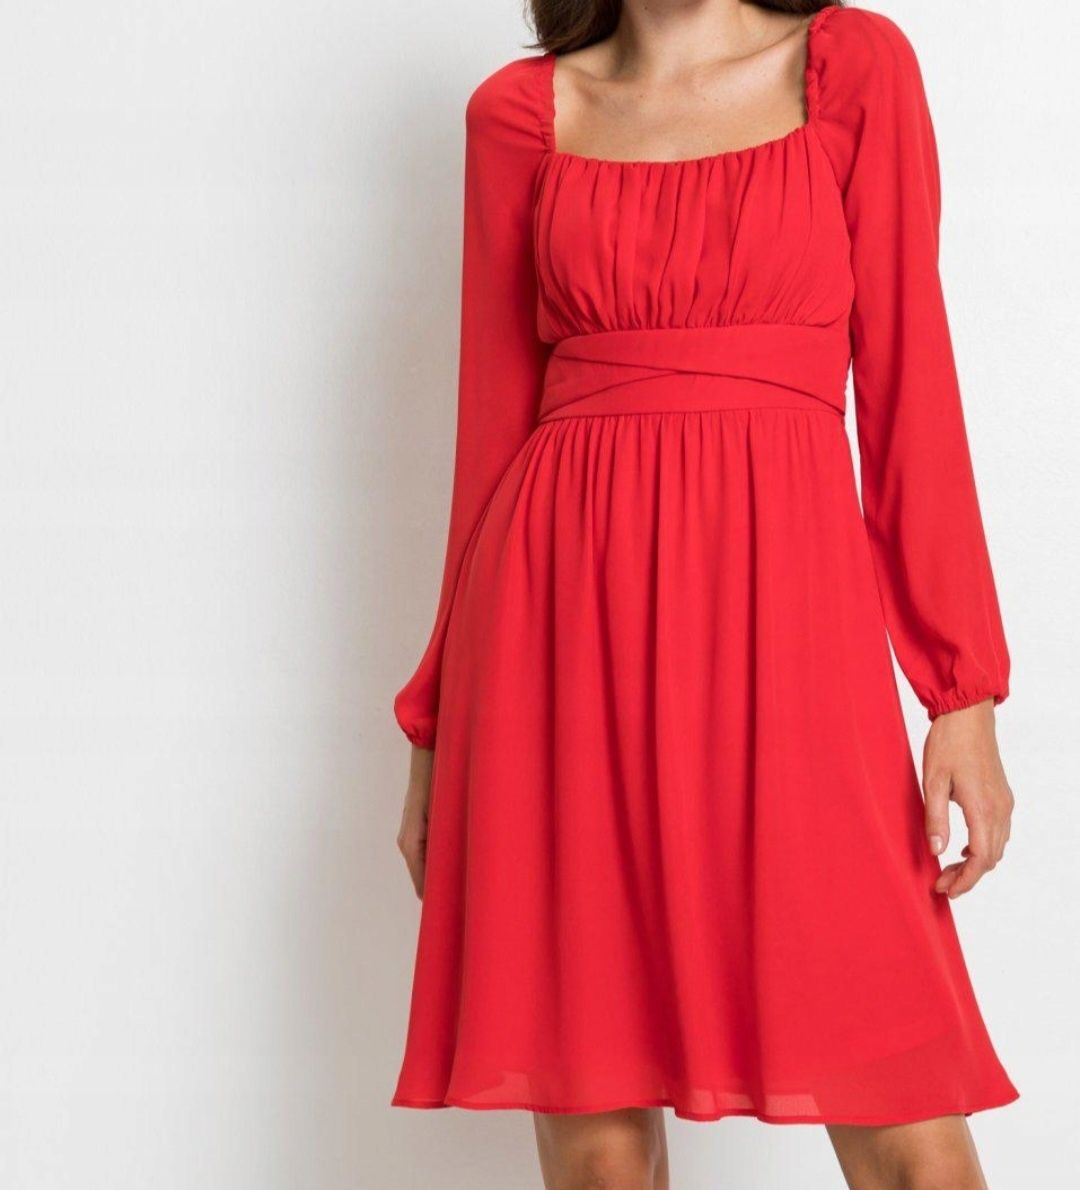 Nowa sukienka czerwona carmen 46